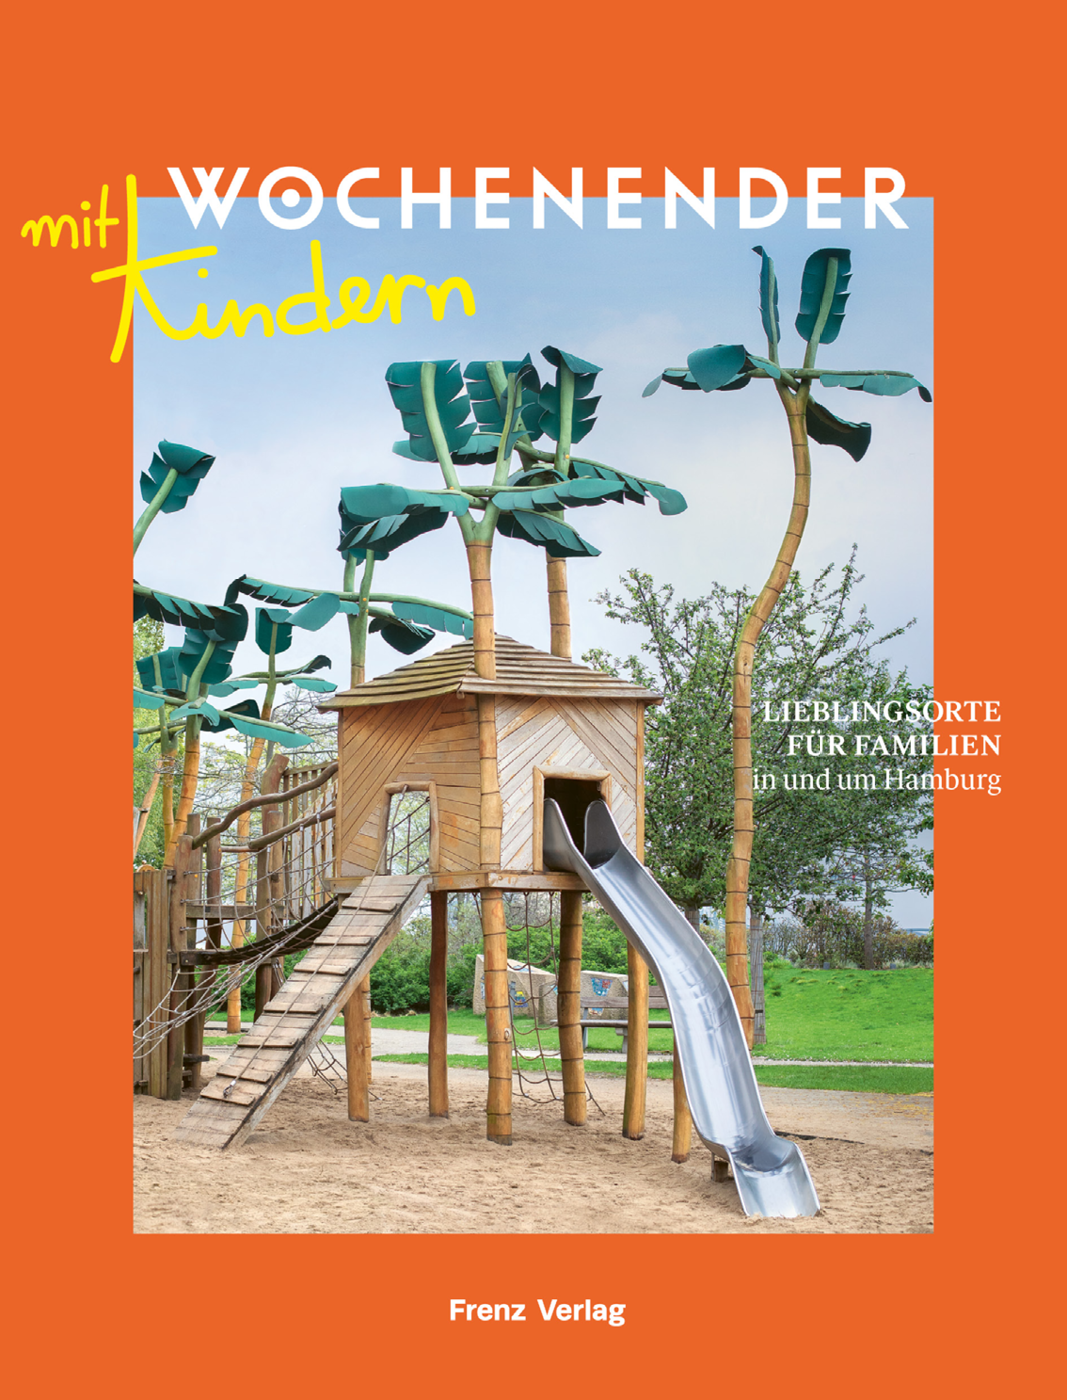 WOCHENENDER – LIEBLINGSORTE FÜR FAMILIEN IN UND UM HAMBURG